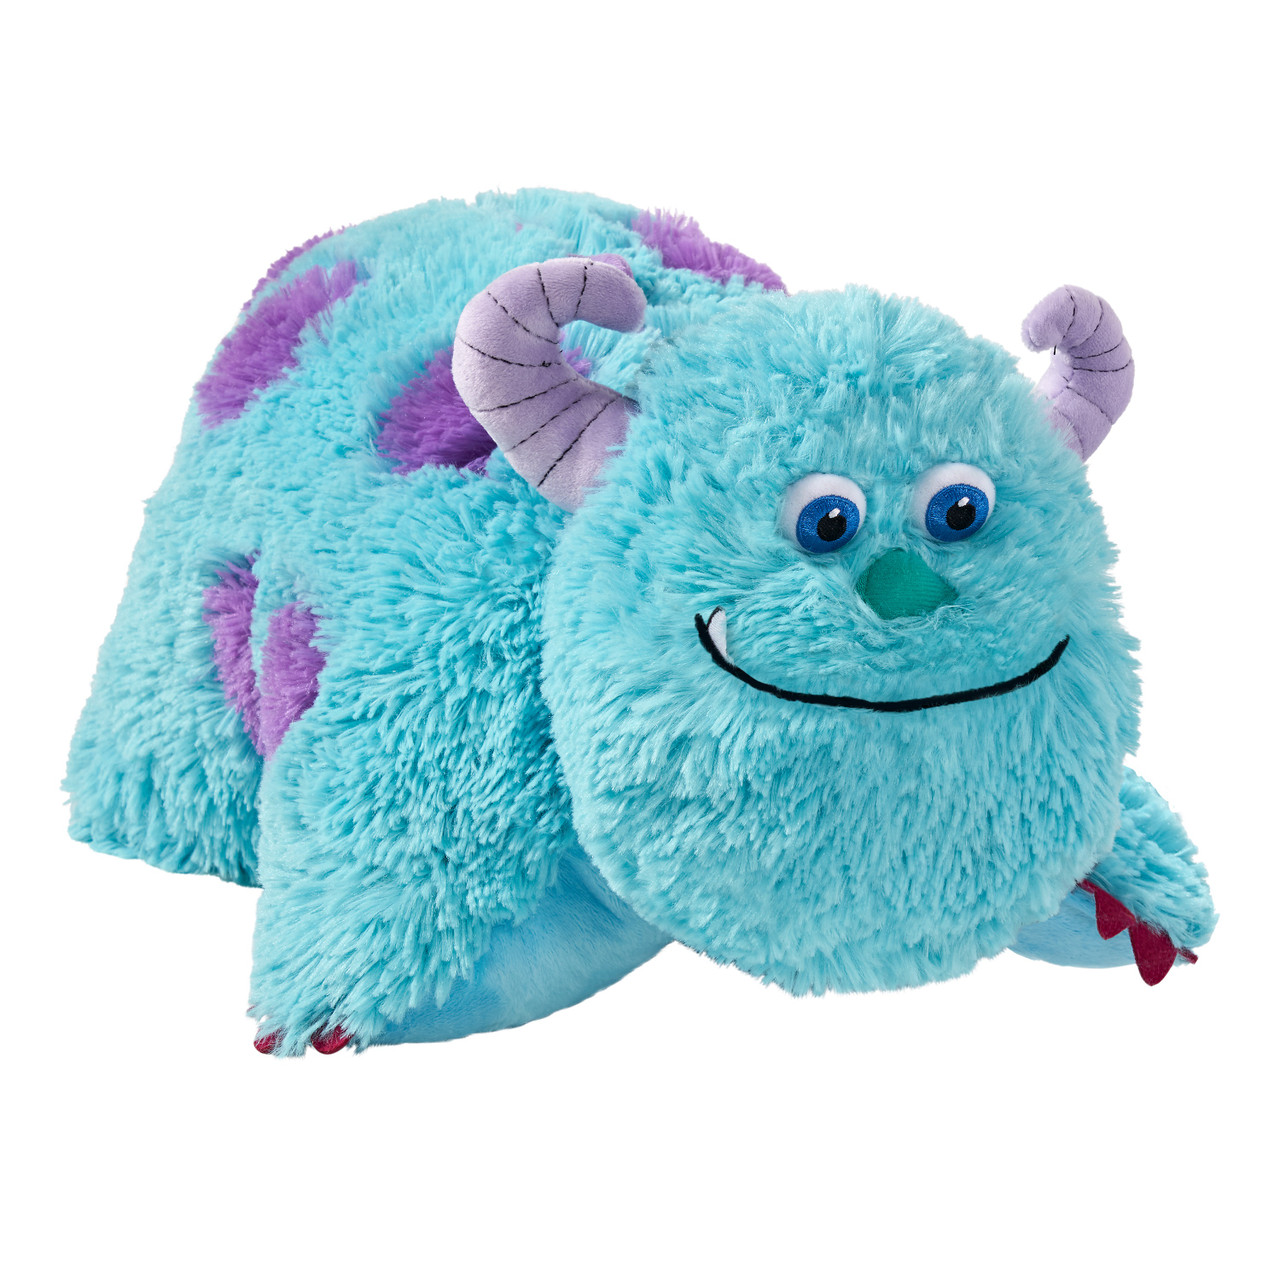 Pillow Pets Disney Lilo and Stitch Stuffed Animal Plush Toy 